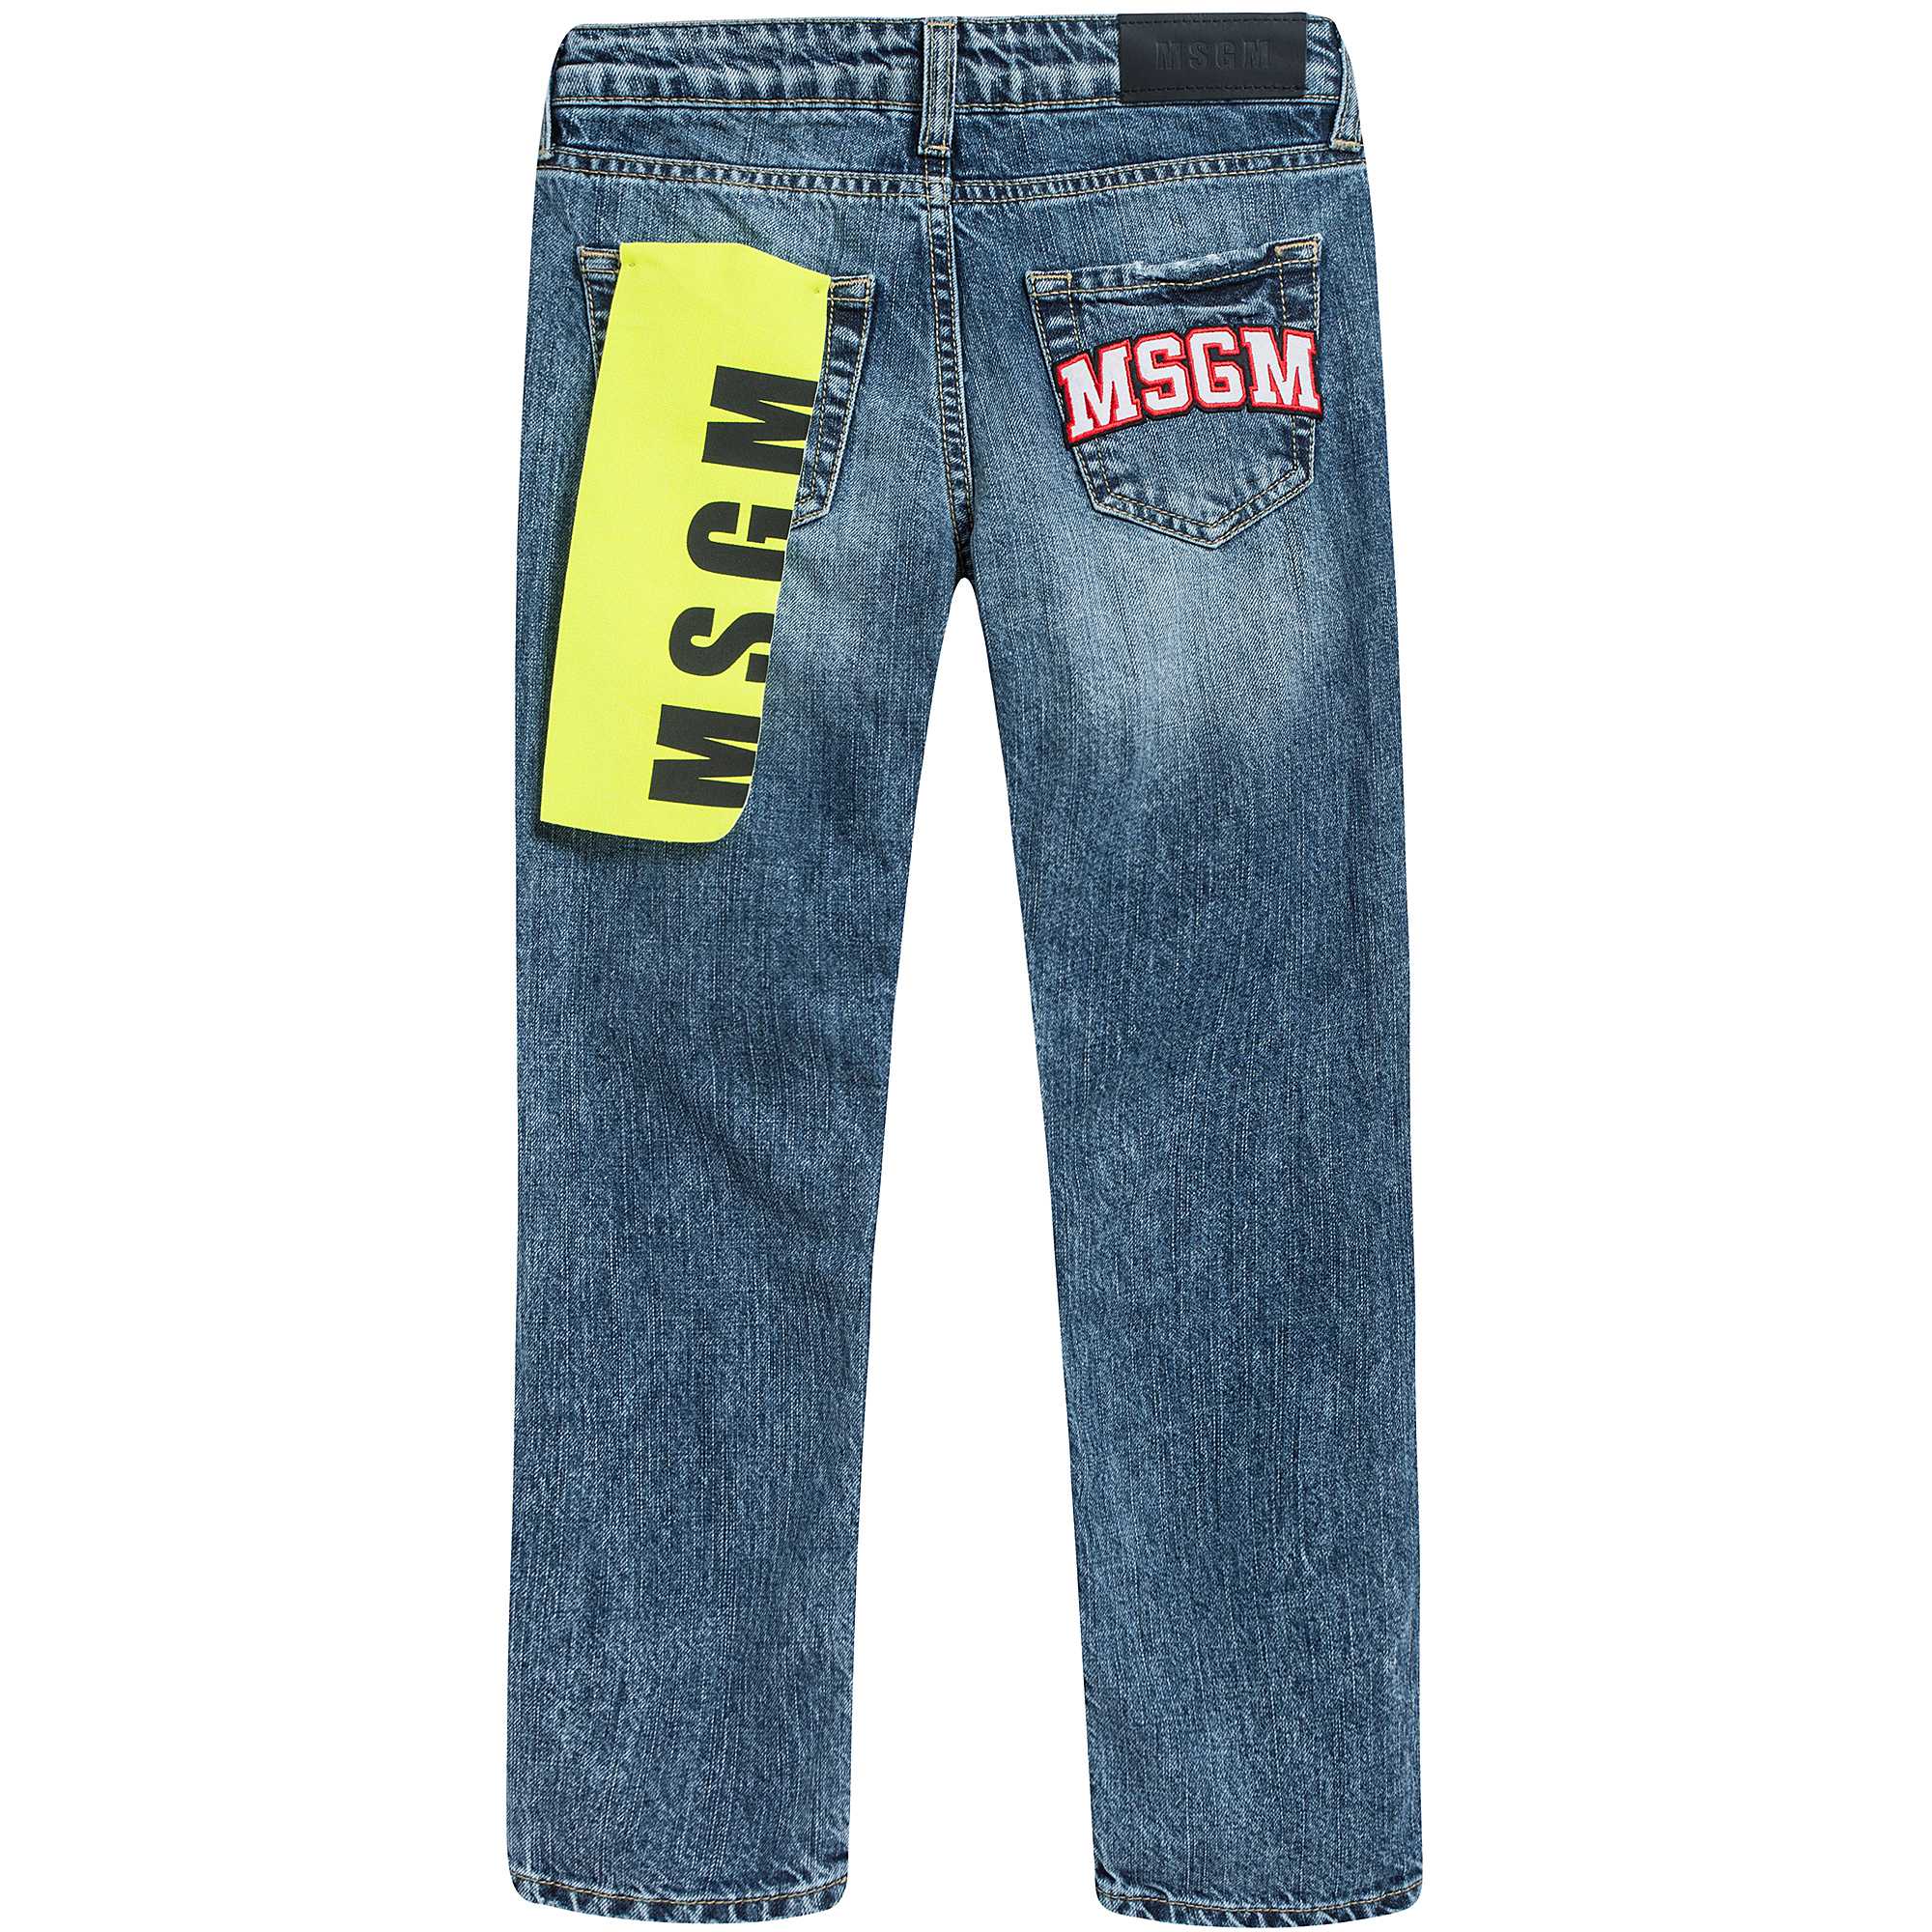 Boys Denim Blue Cotton Jeans